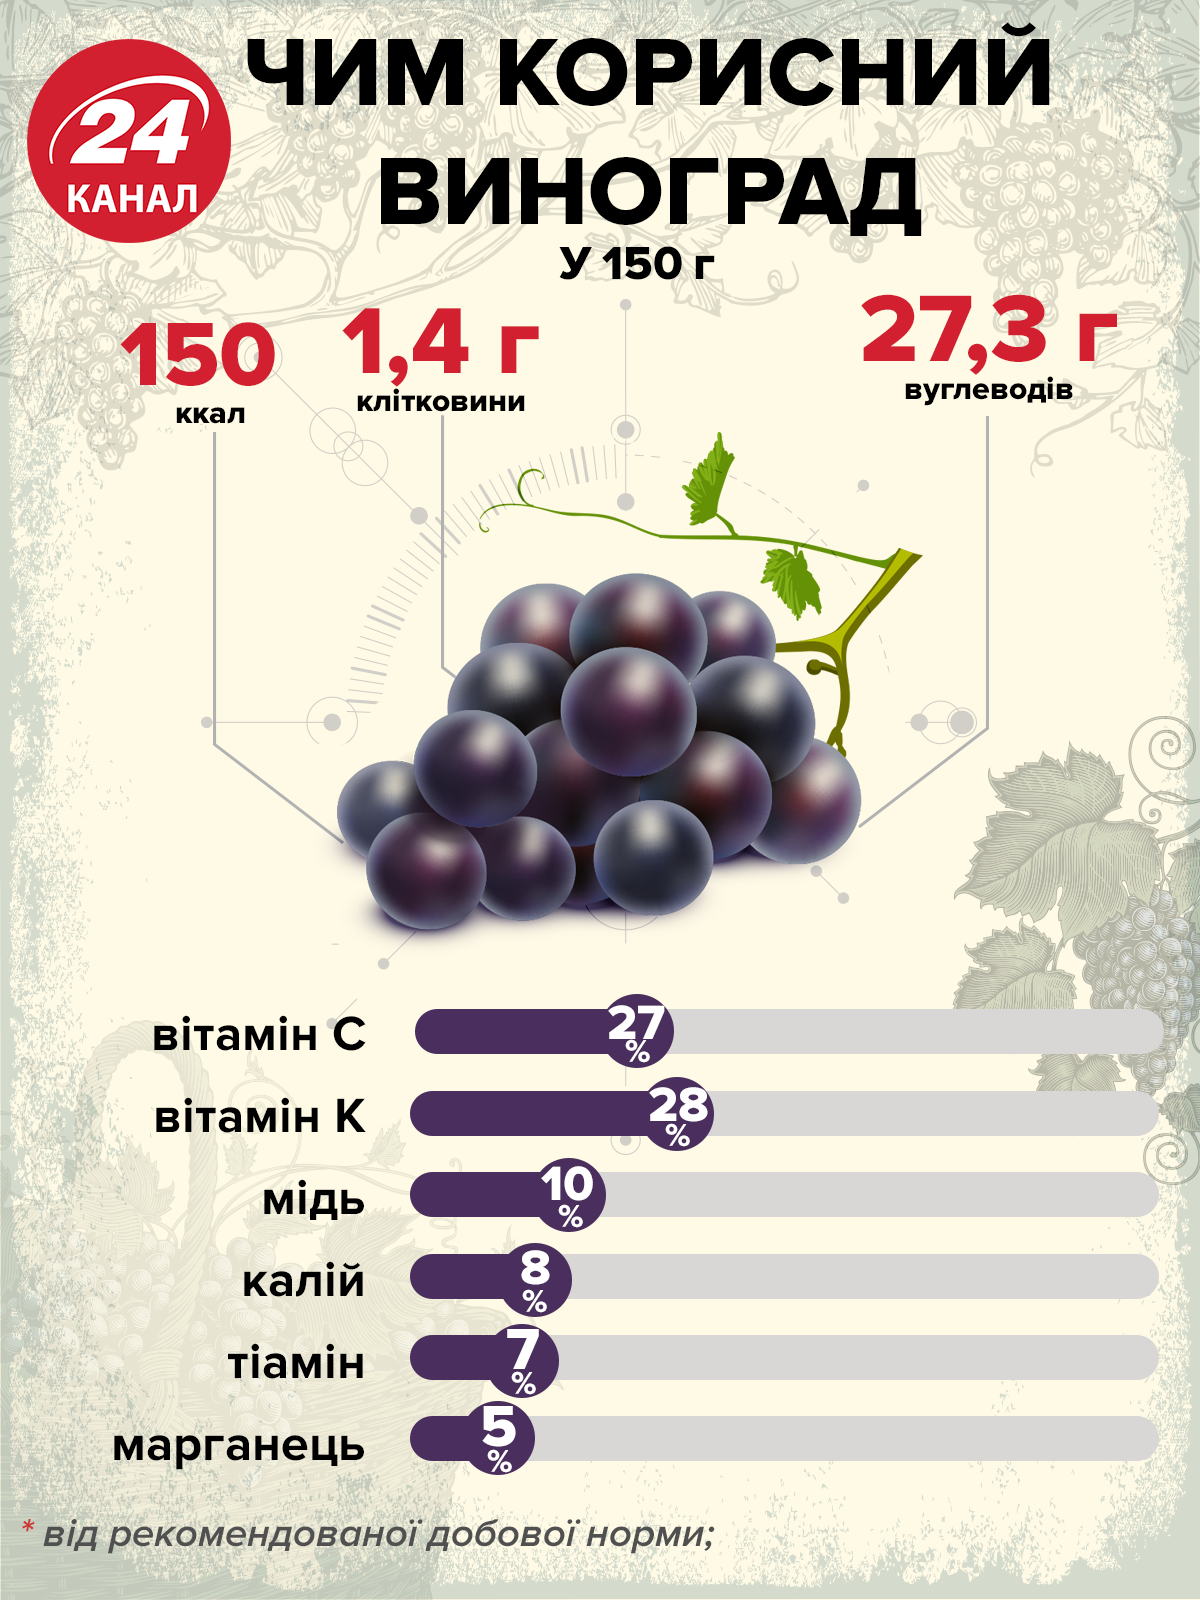 Какого витамина больше всего в винограде. Пищевая ценность винограда в 100 граммах. Калорийность винного винограда. Витамины в винограде. Полезные вещества в винограде.